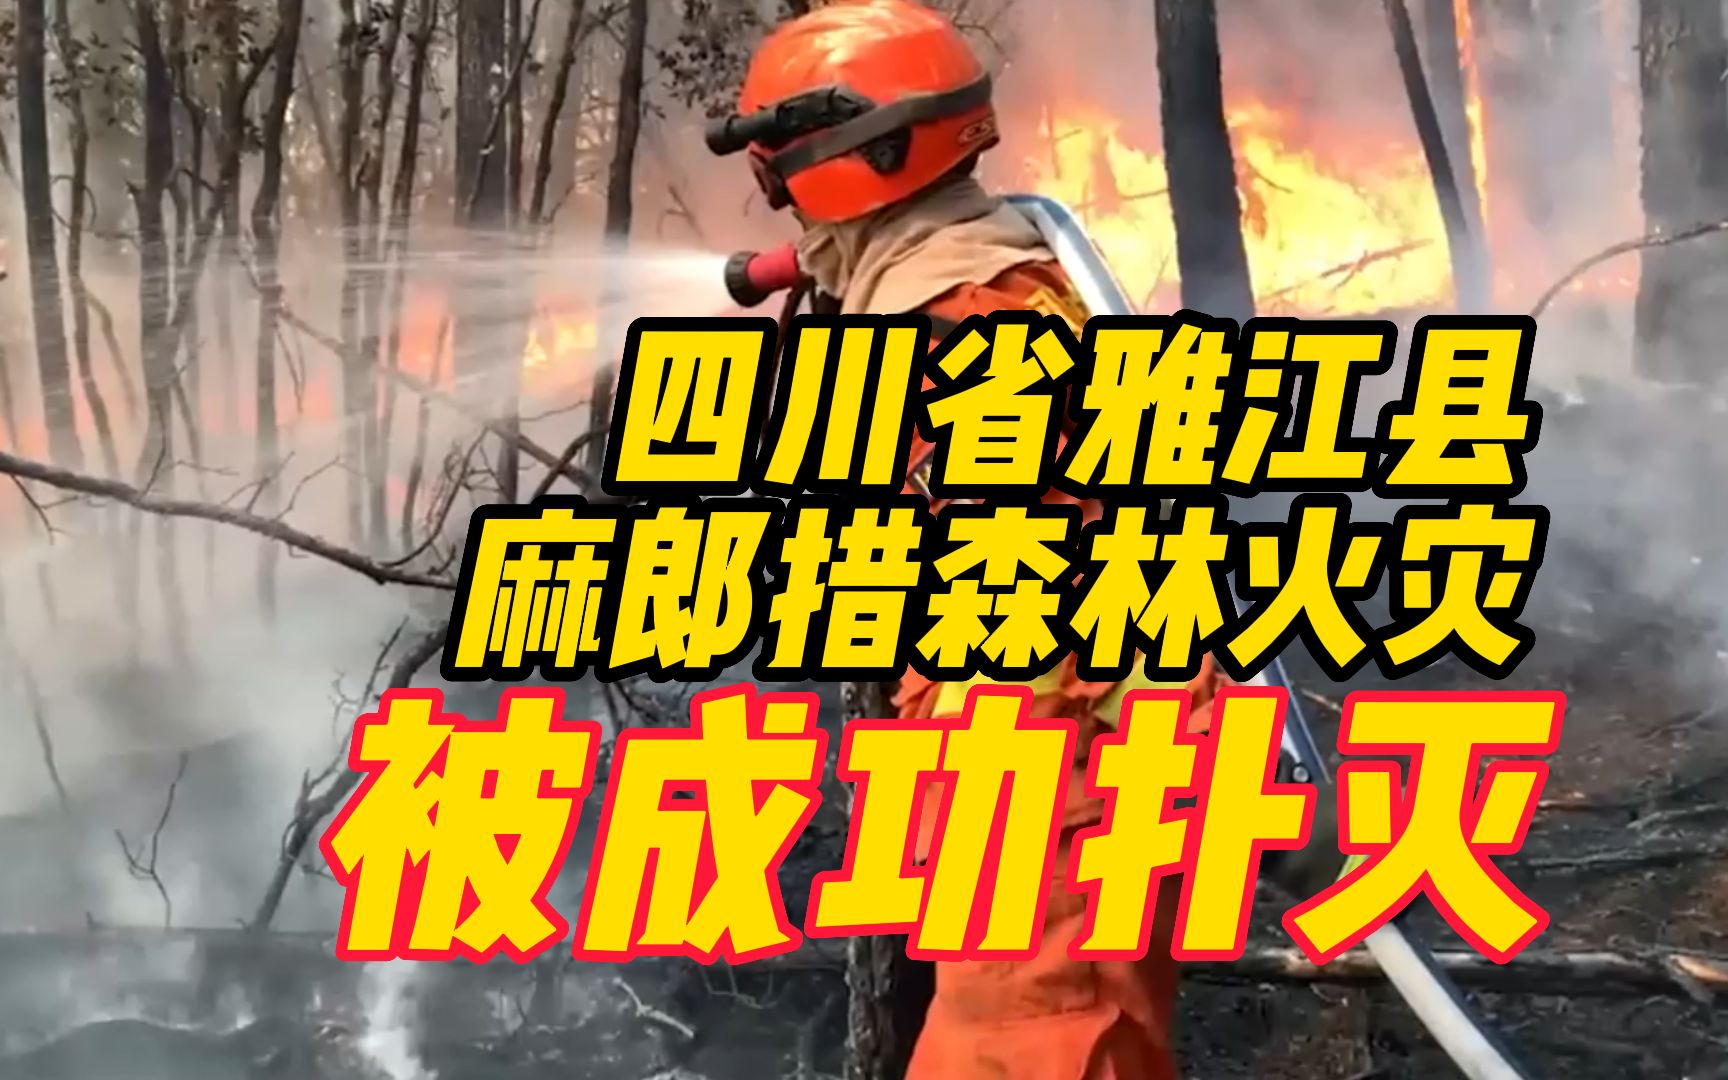 四川雅江森林火灾起火原因初步查明 系施工动火作业引发